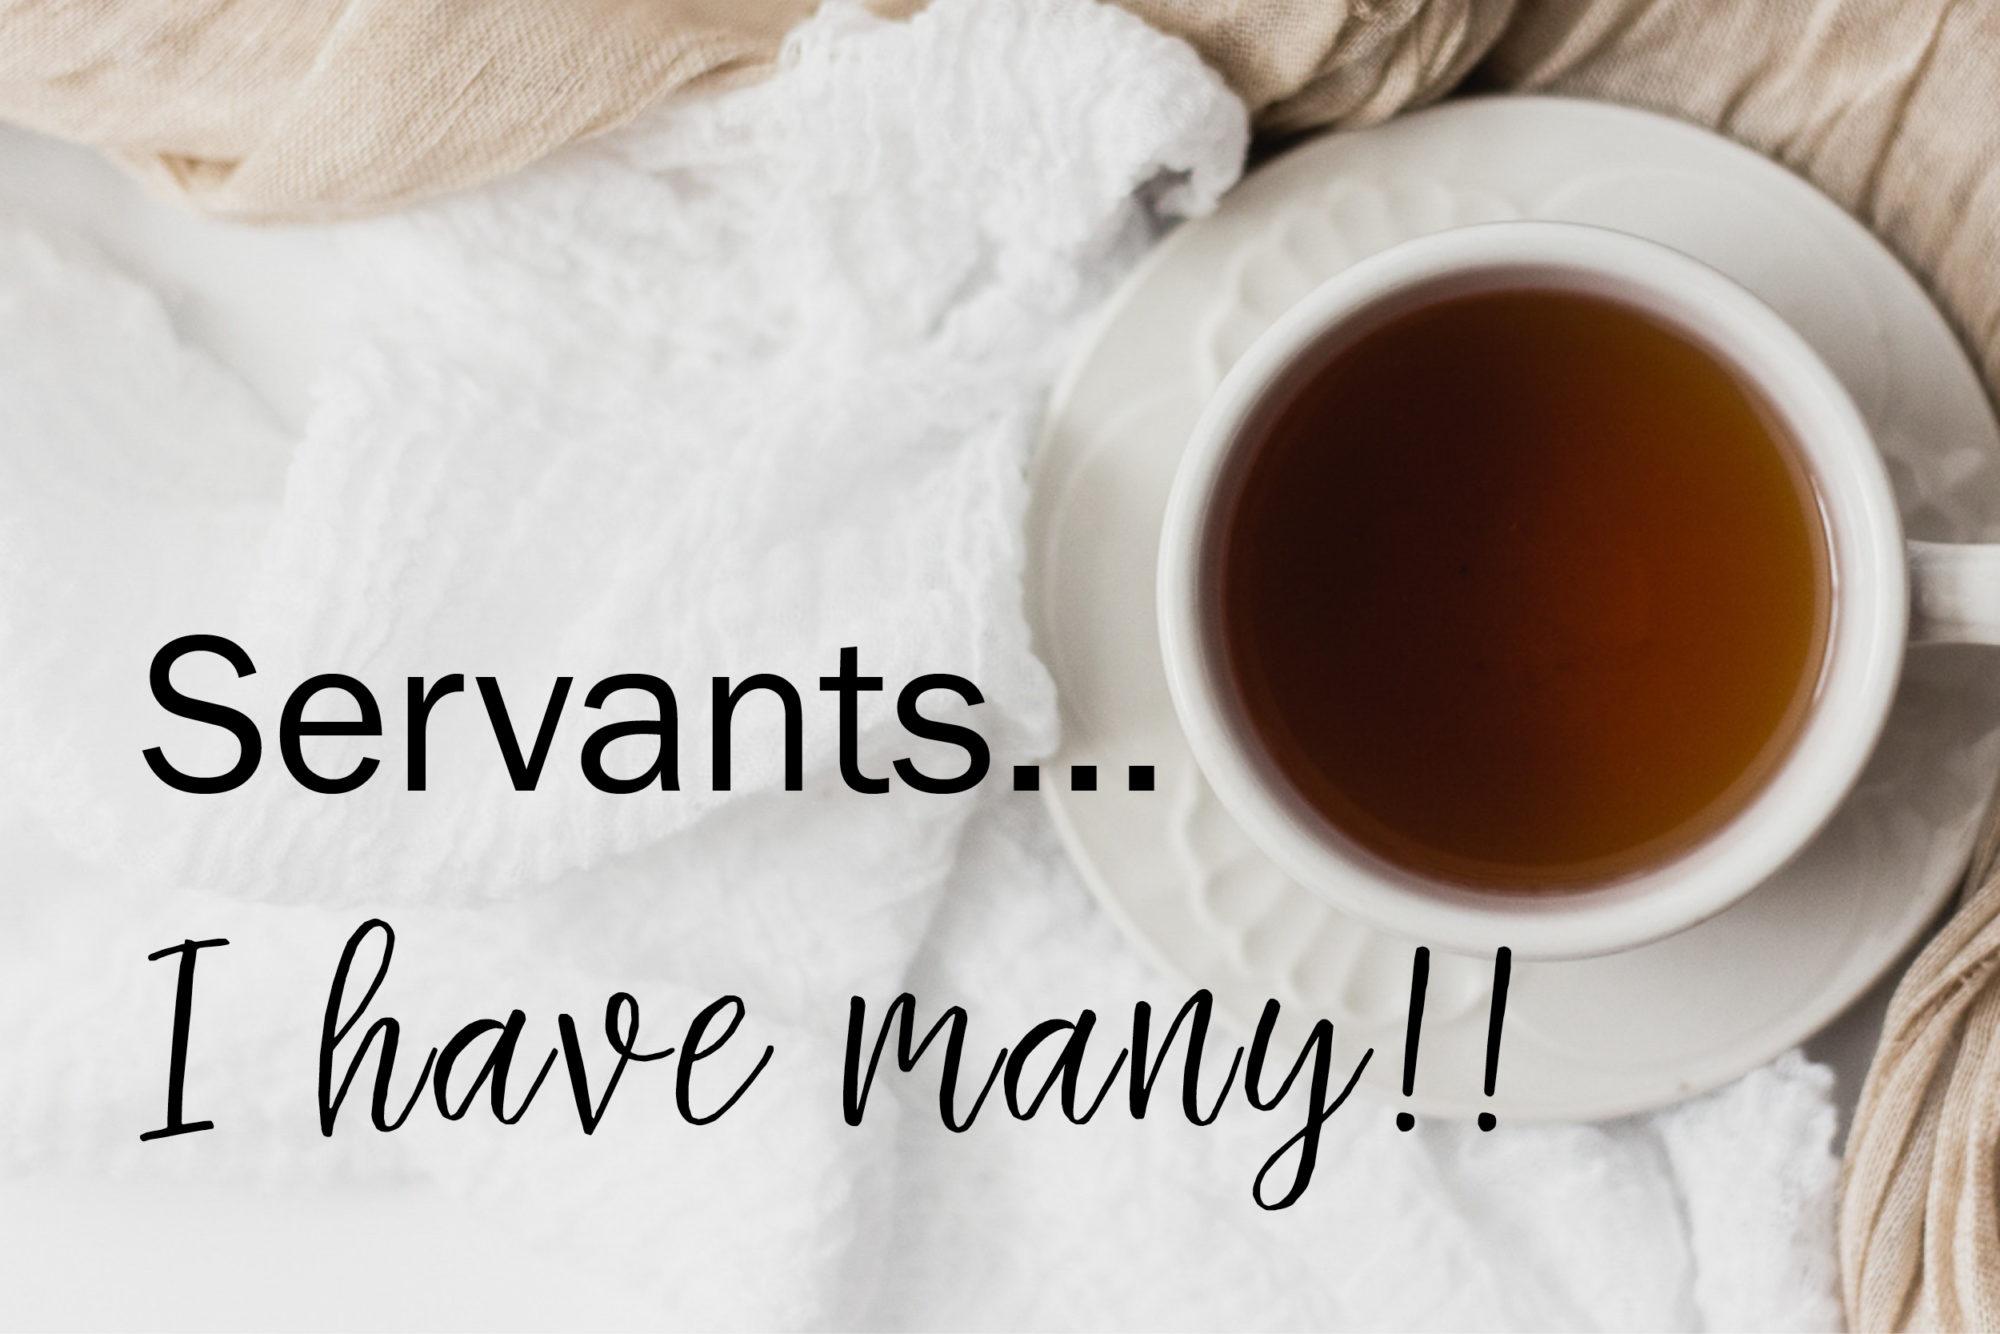 Servants...I have many!!